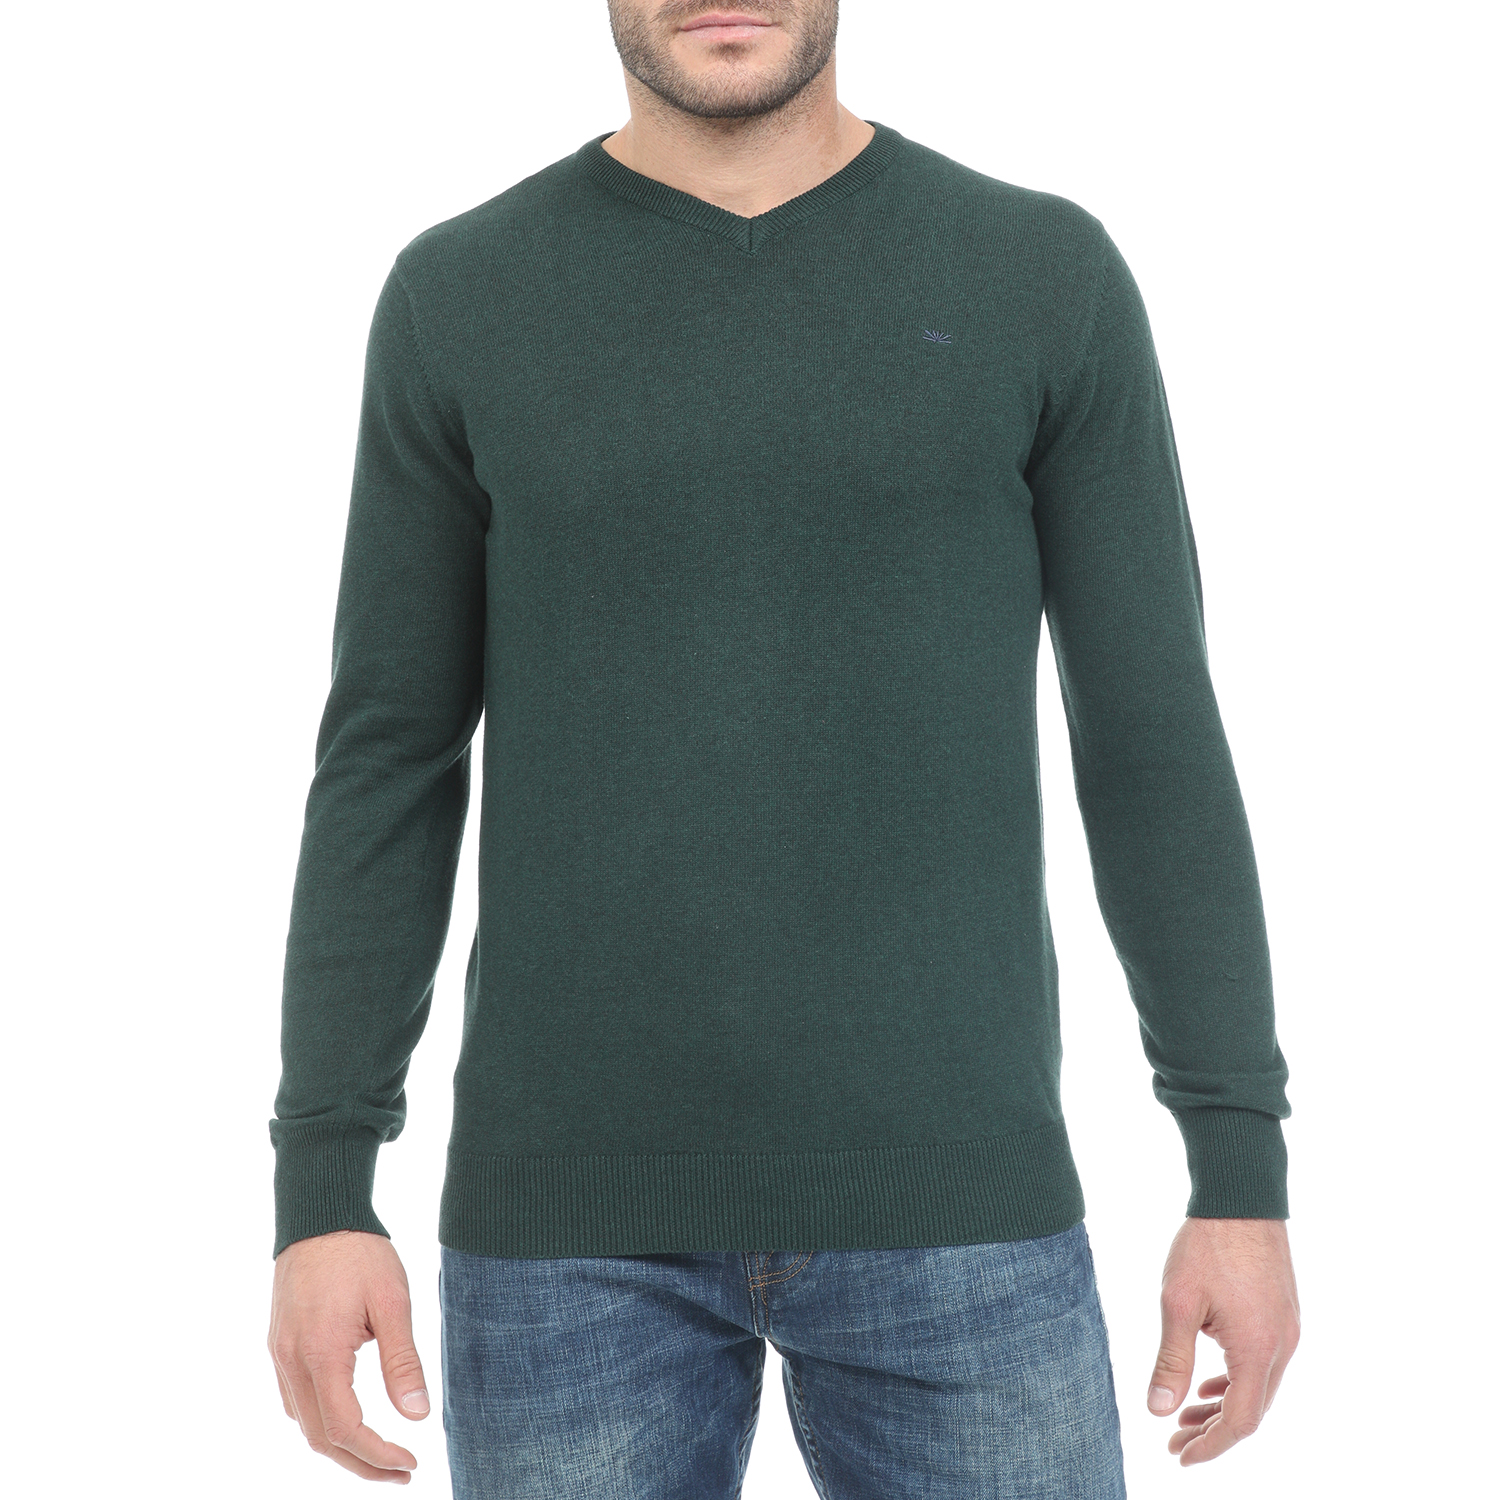 Ανδρικά/Ρούχα/Πλεκτά-Ζακέτες/Πουλόβερ FUNKY BUDDHA - Ανδρική πλεκτή μπλούζα FUNKY BUDDHA πράσινη